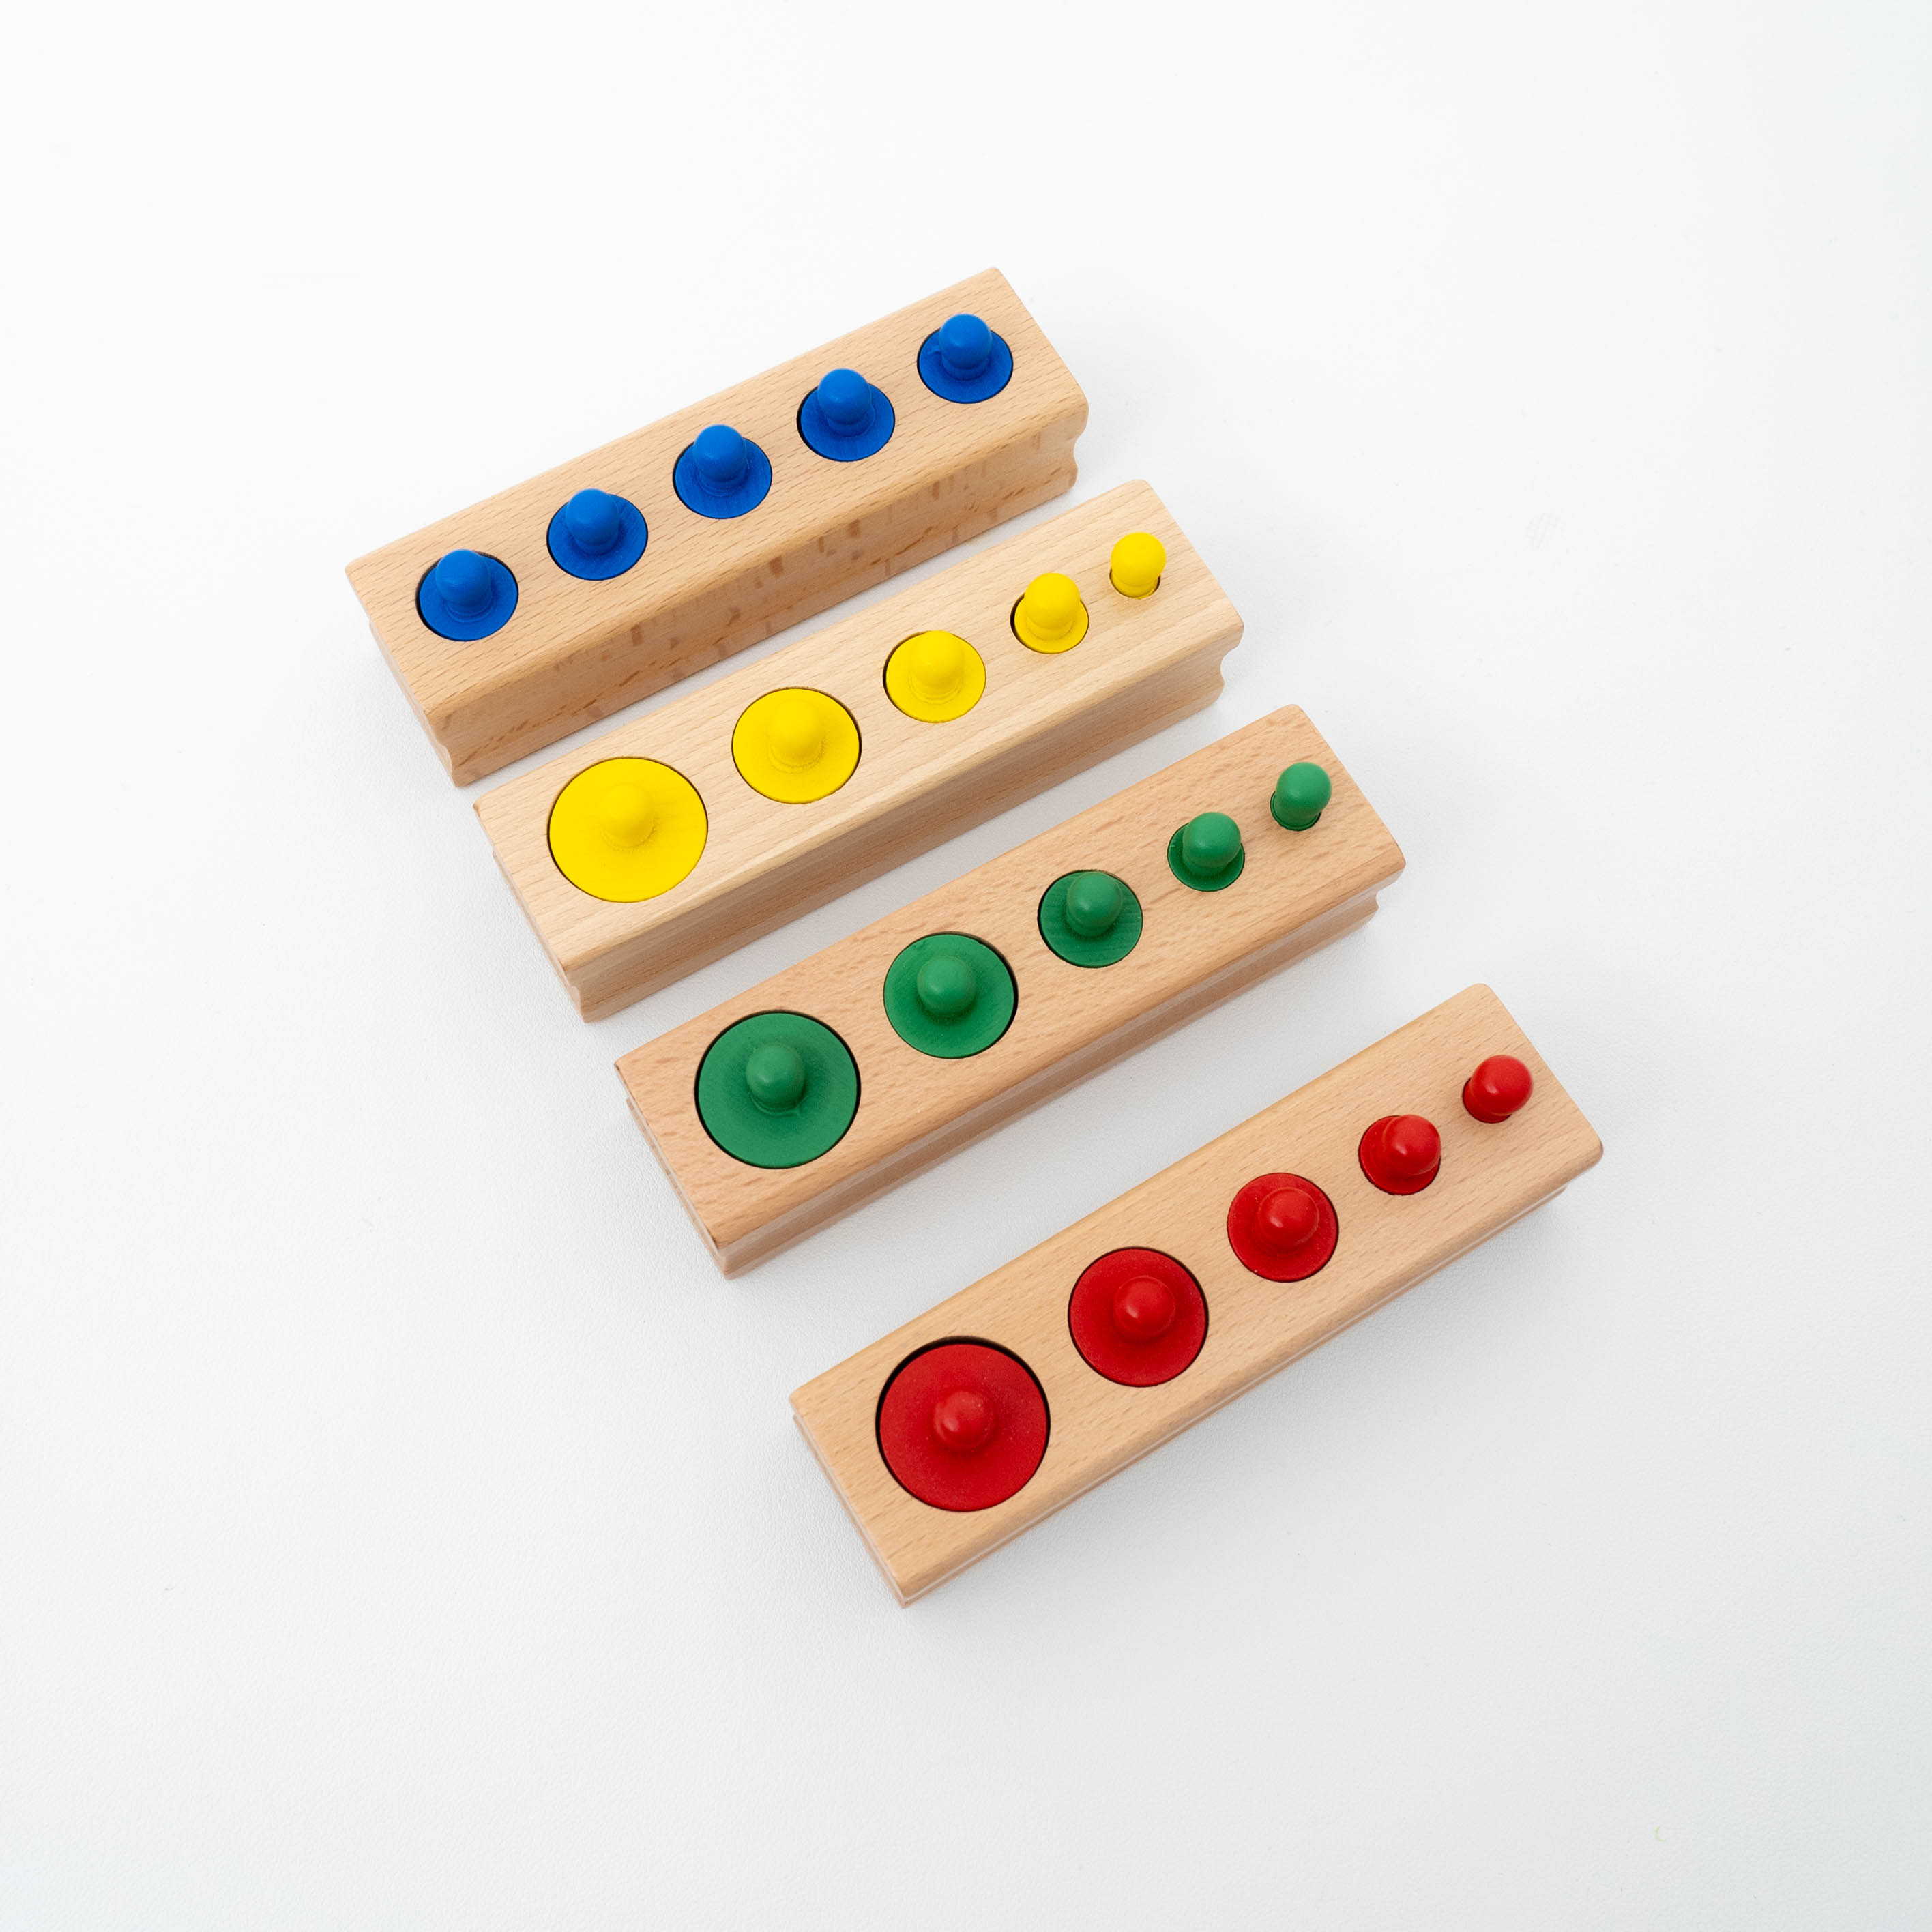 『知育おもちゃ』木製モンテッソーリ知育おもちゃ｜遊んでいるうちに、大きさの違いや色の認識、自然の感覚、配色などが理解できる|undefined